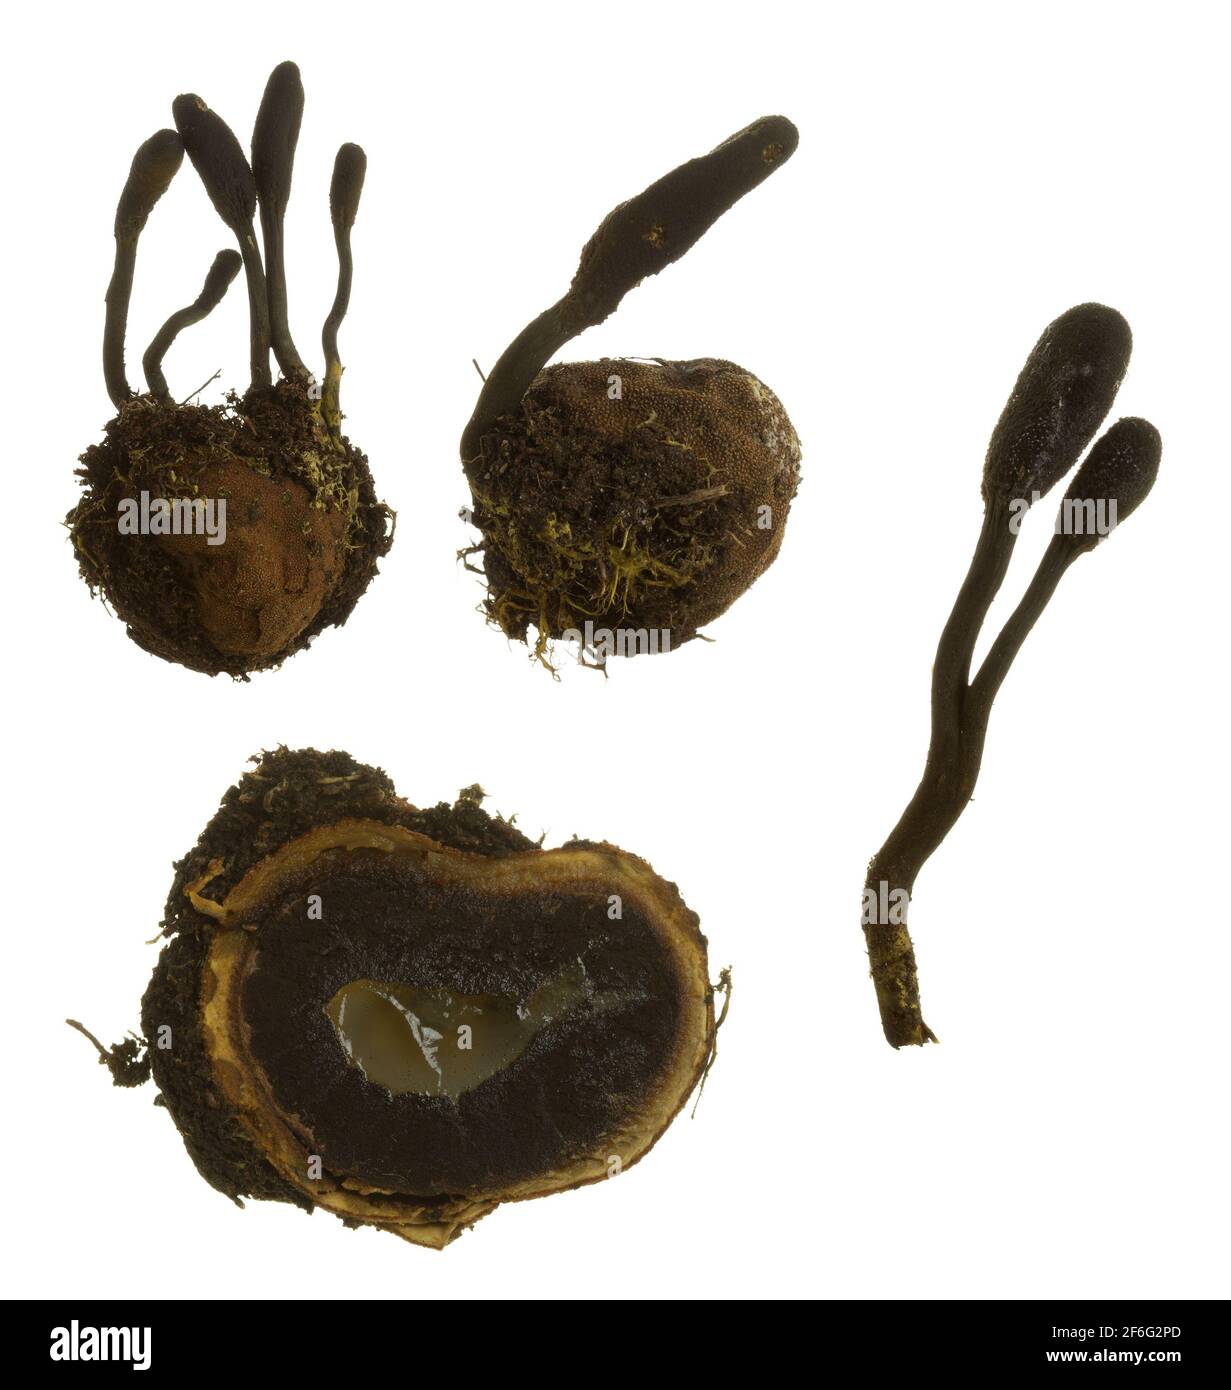 False truffle, Elaphomyces granulatus and parasitic fungi, Elaphocordyceps ophioglossoides isolated on white background Stock Photo